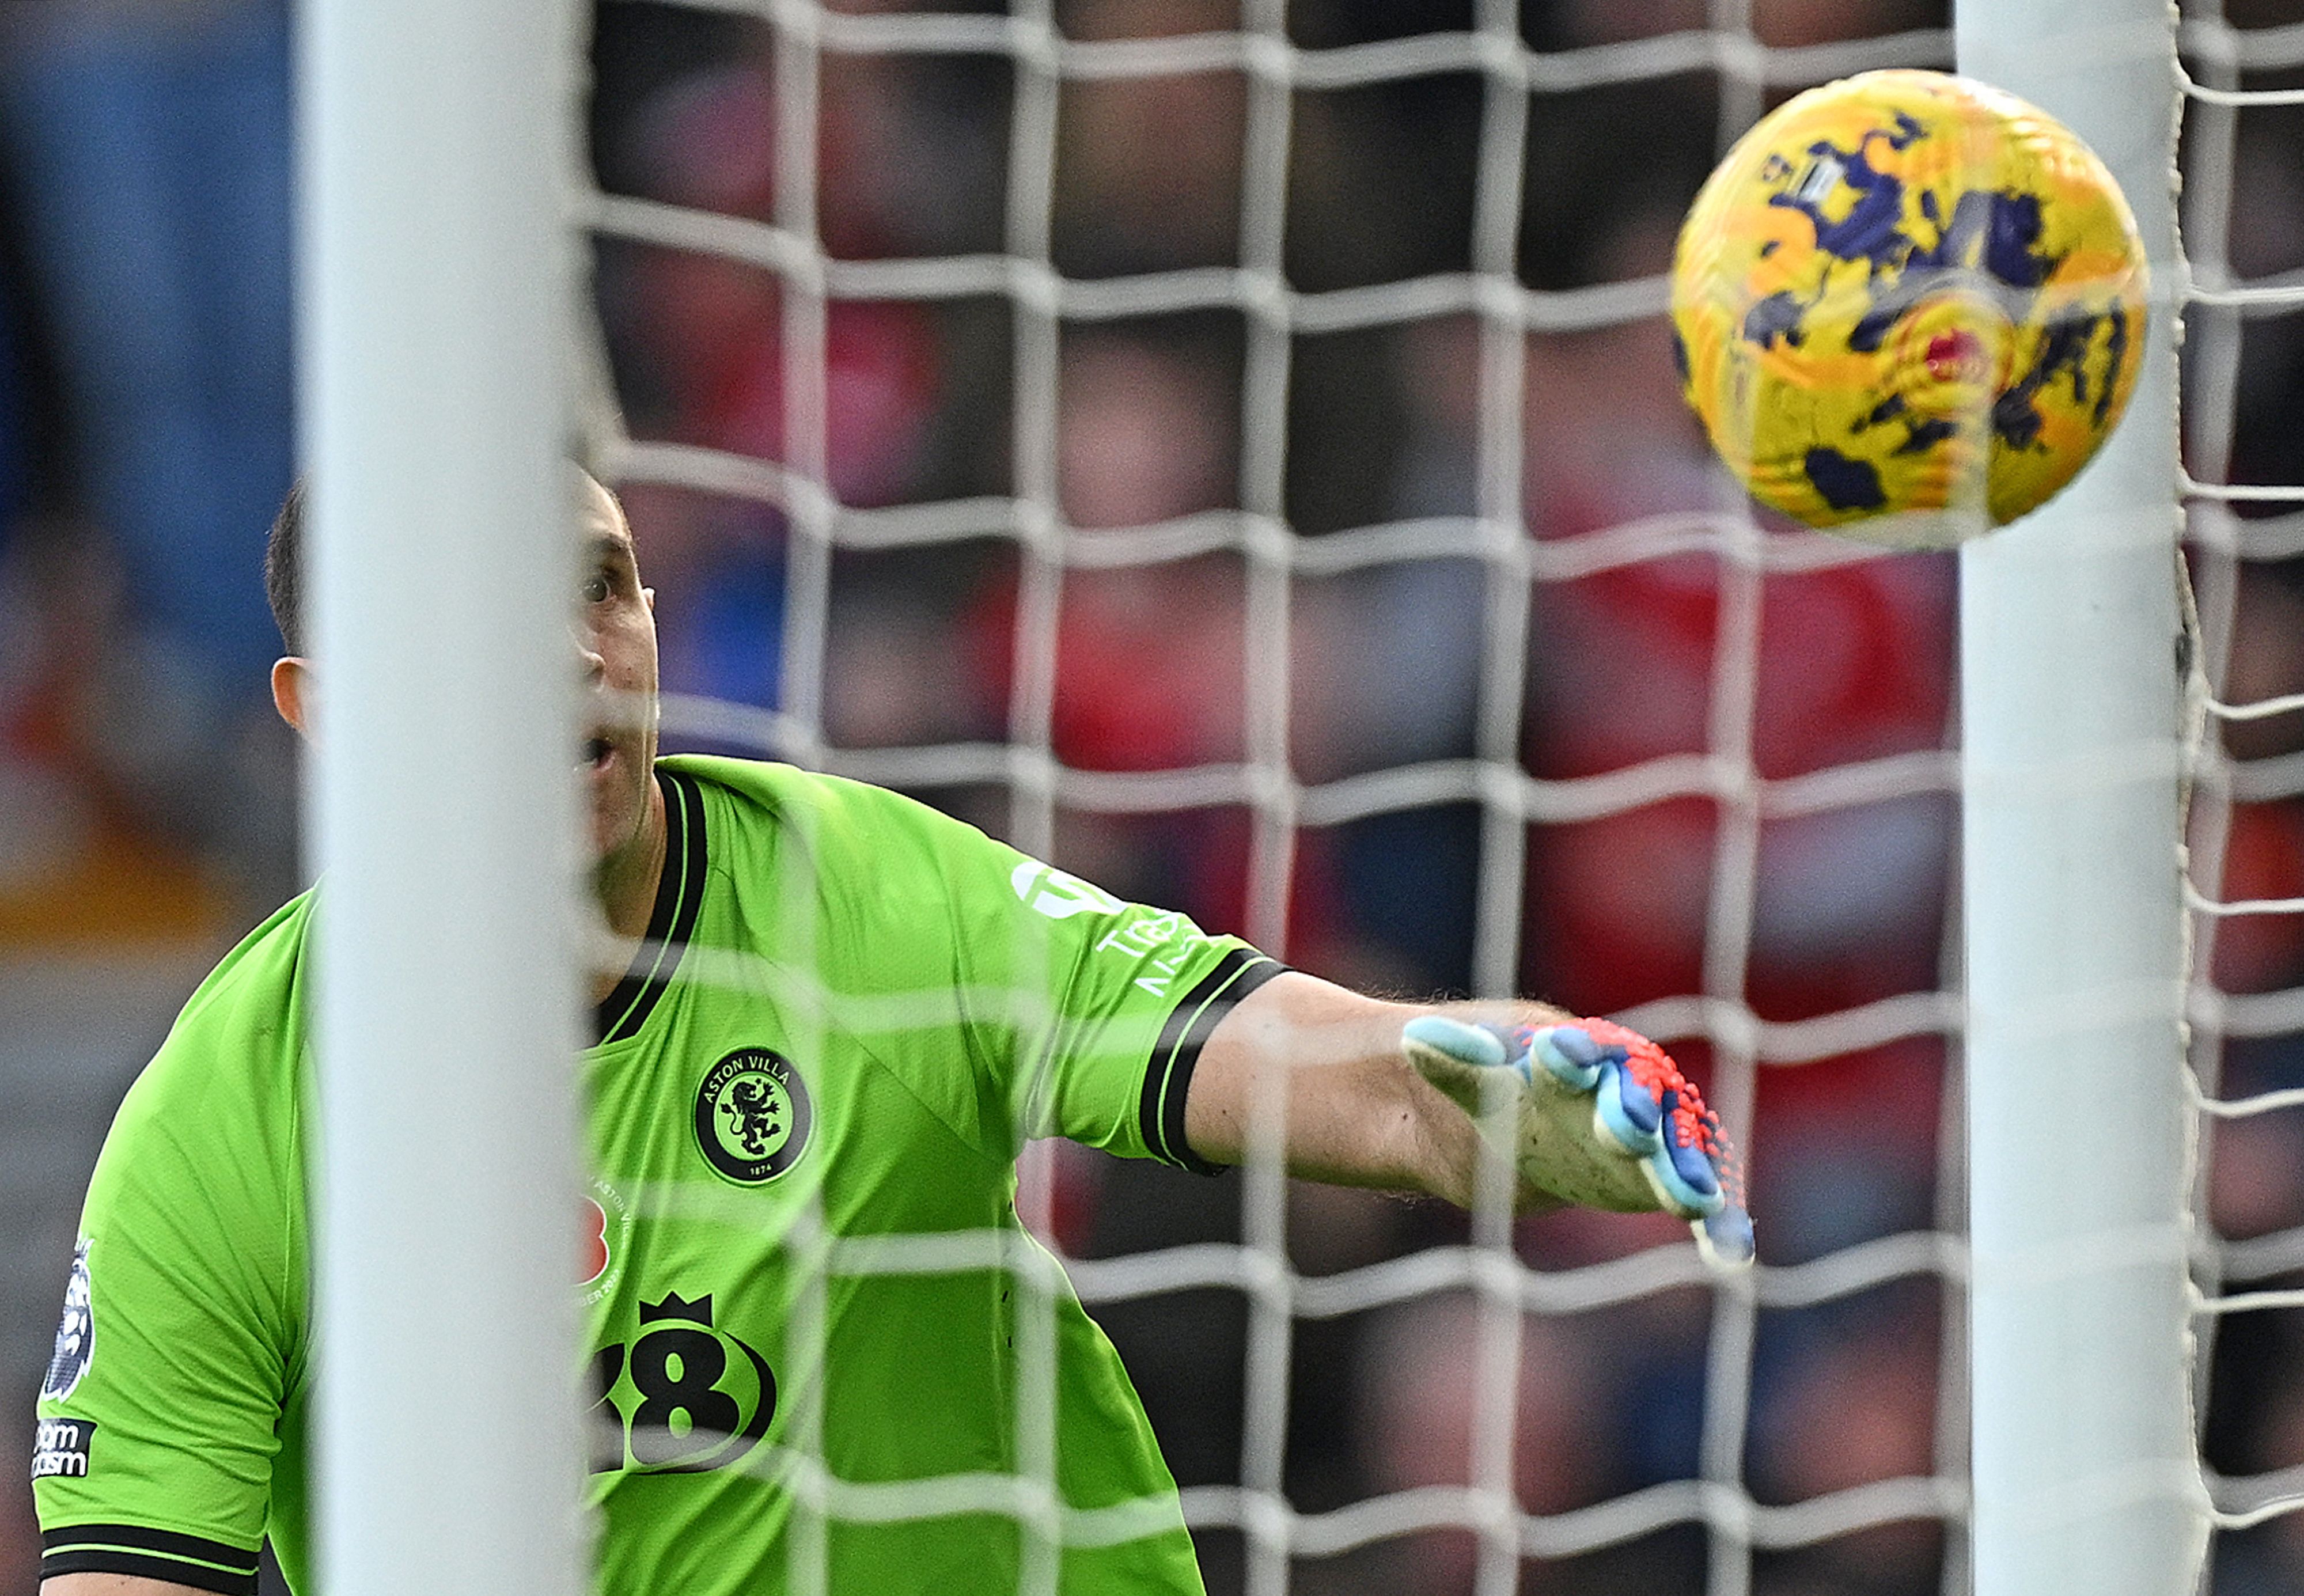 El portero del Aston Villa, Emiliano Martínez, observa el balón ingresar en su portería, luego de su error en el segundo gol del Nottingham Forest. (Foto Prensa Libre: AFP)